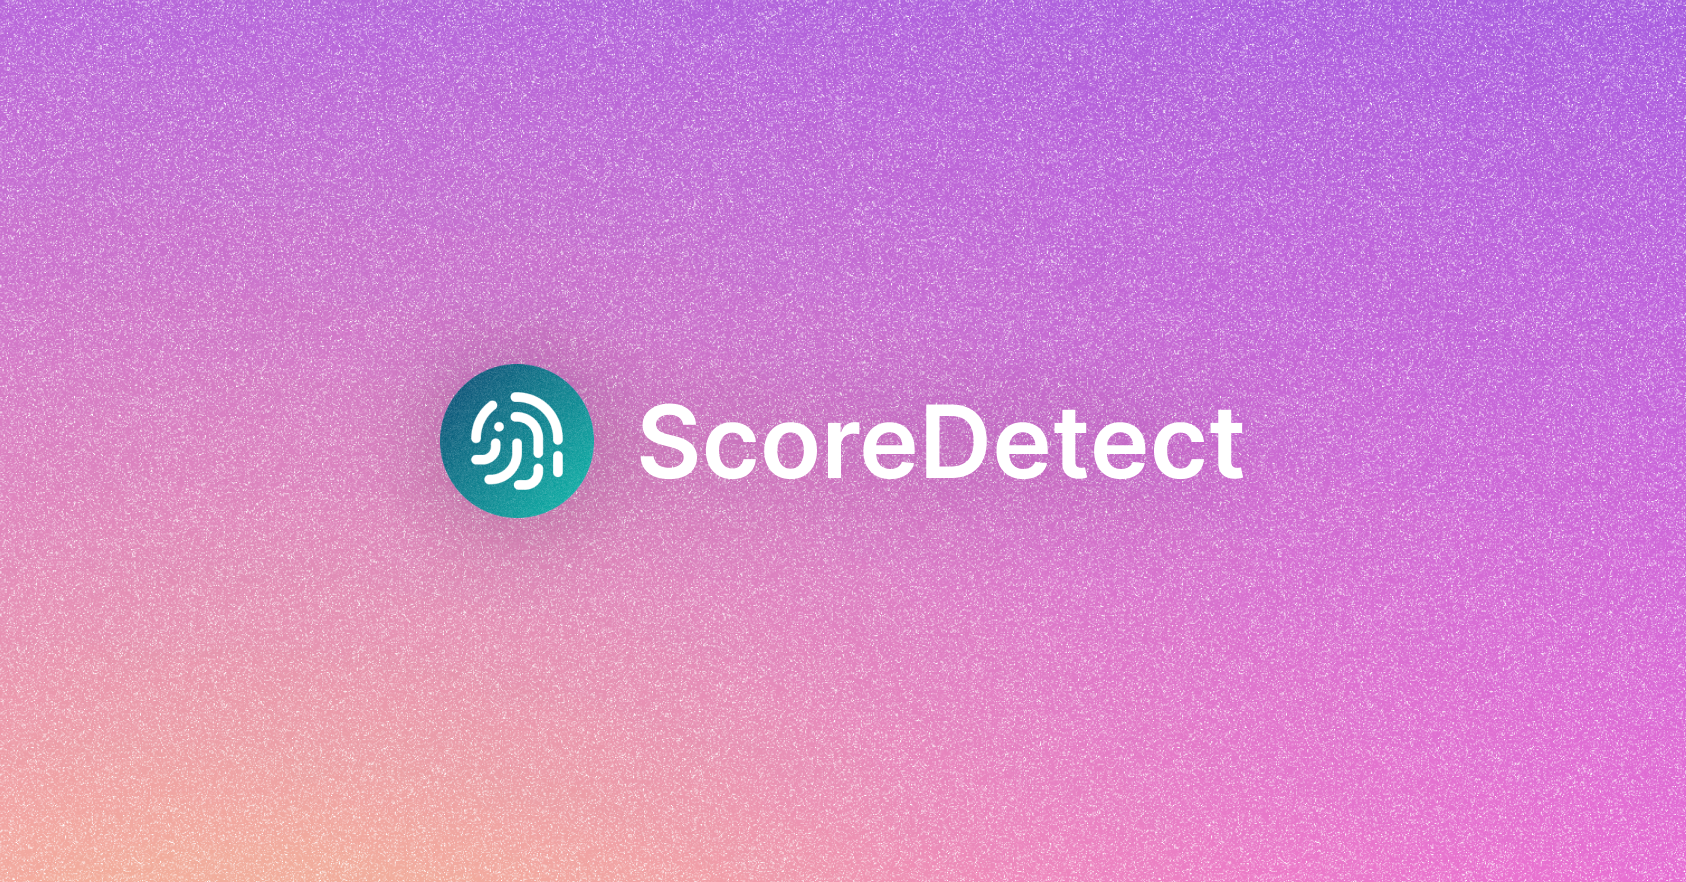 (c) Scoredetect.com